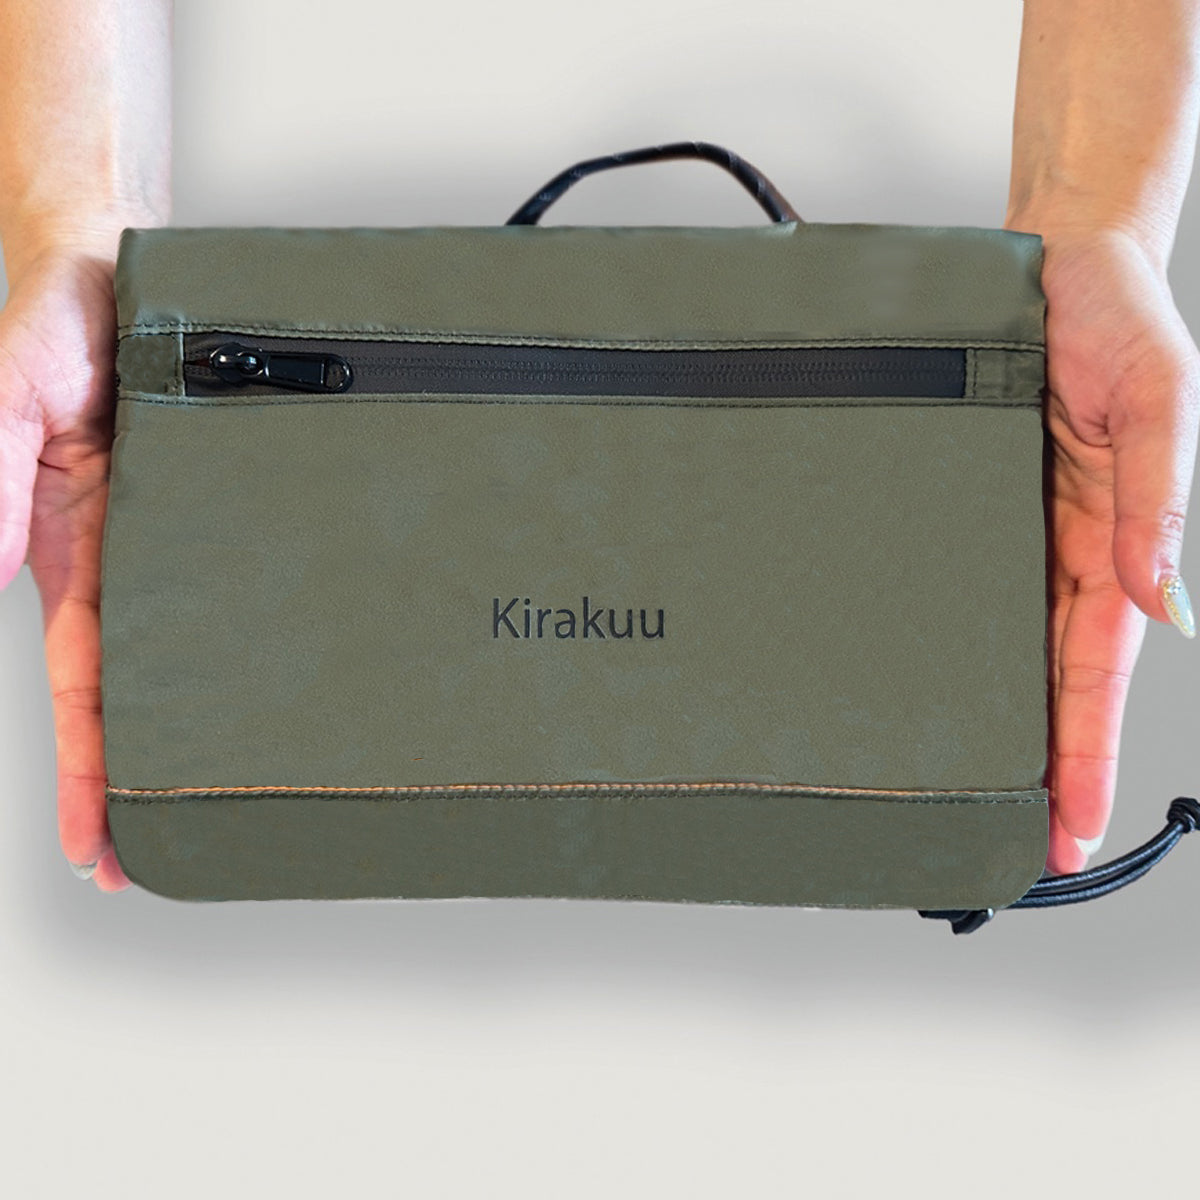 Kirakuu Travel Bag